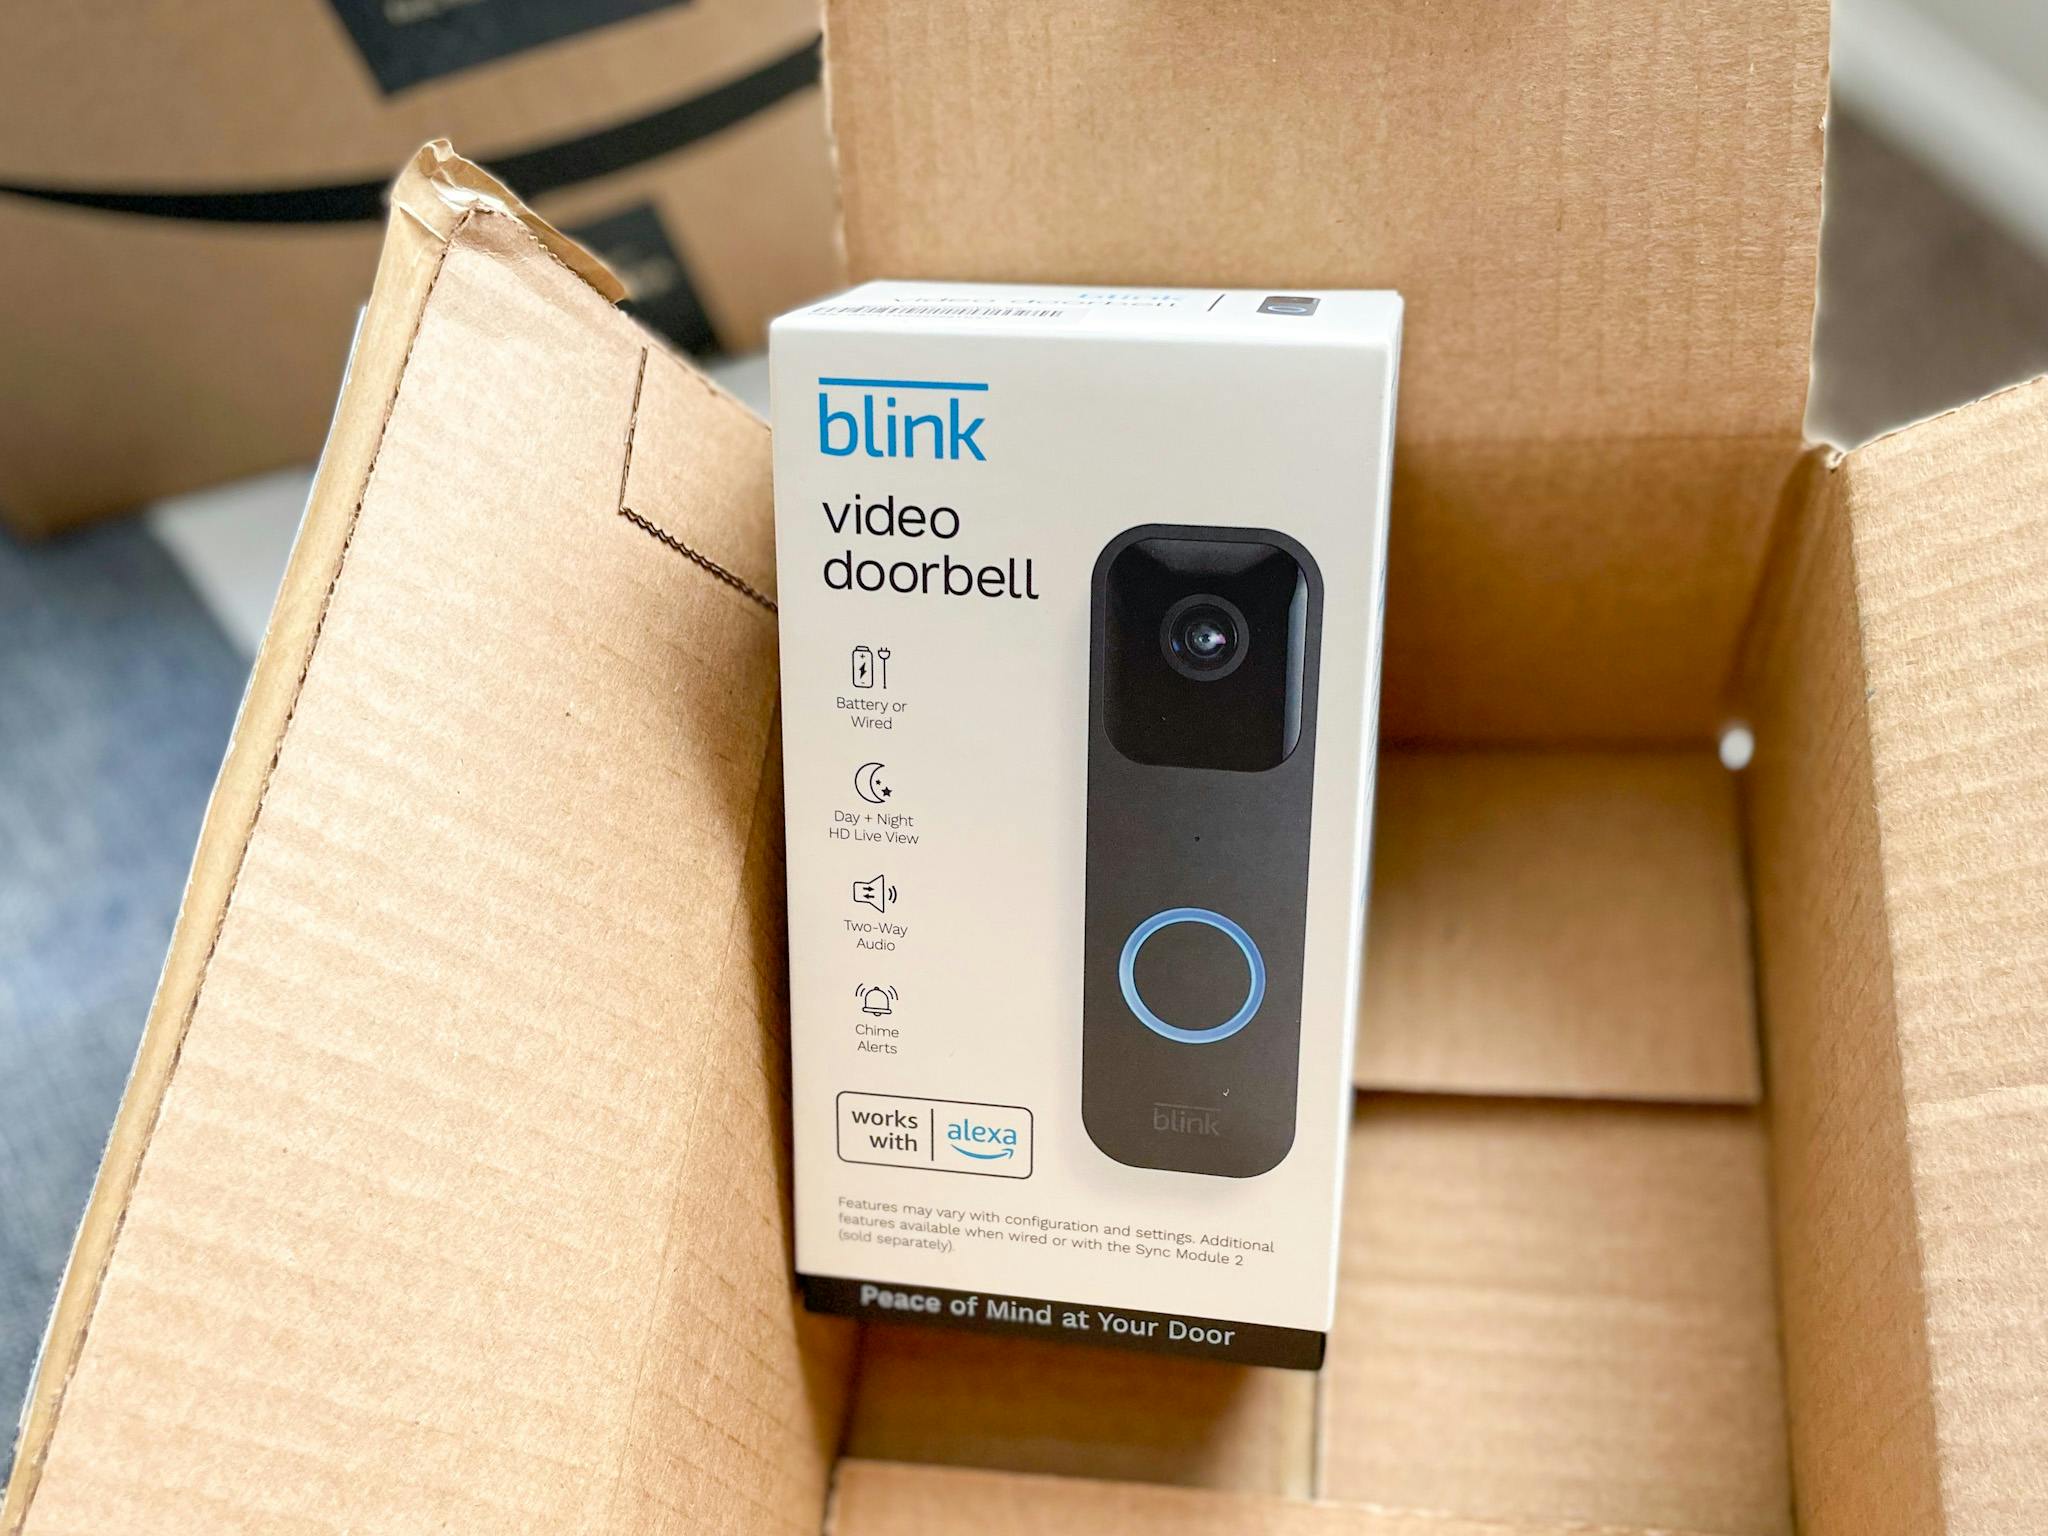 blink video doorbell in an amazon box